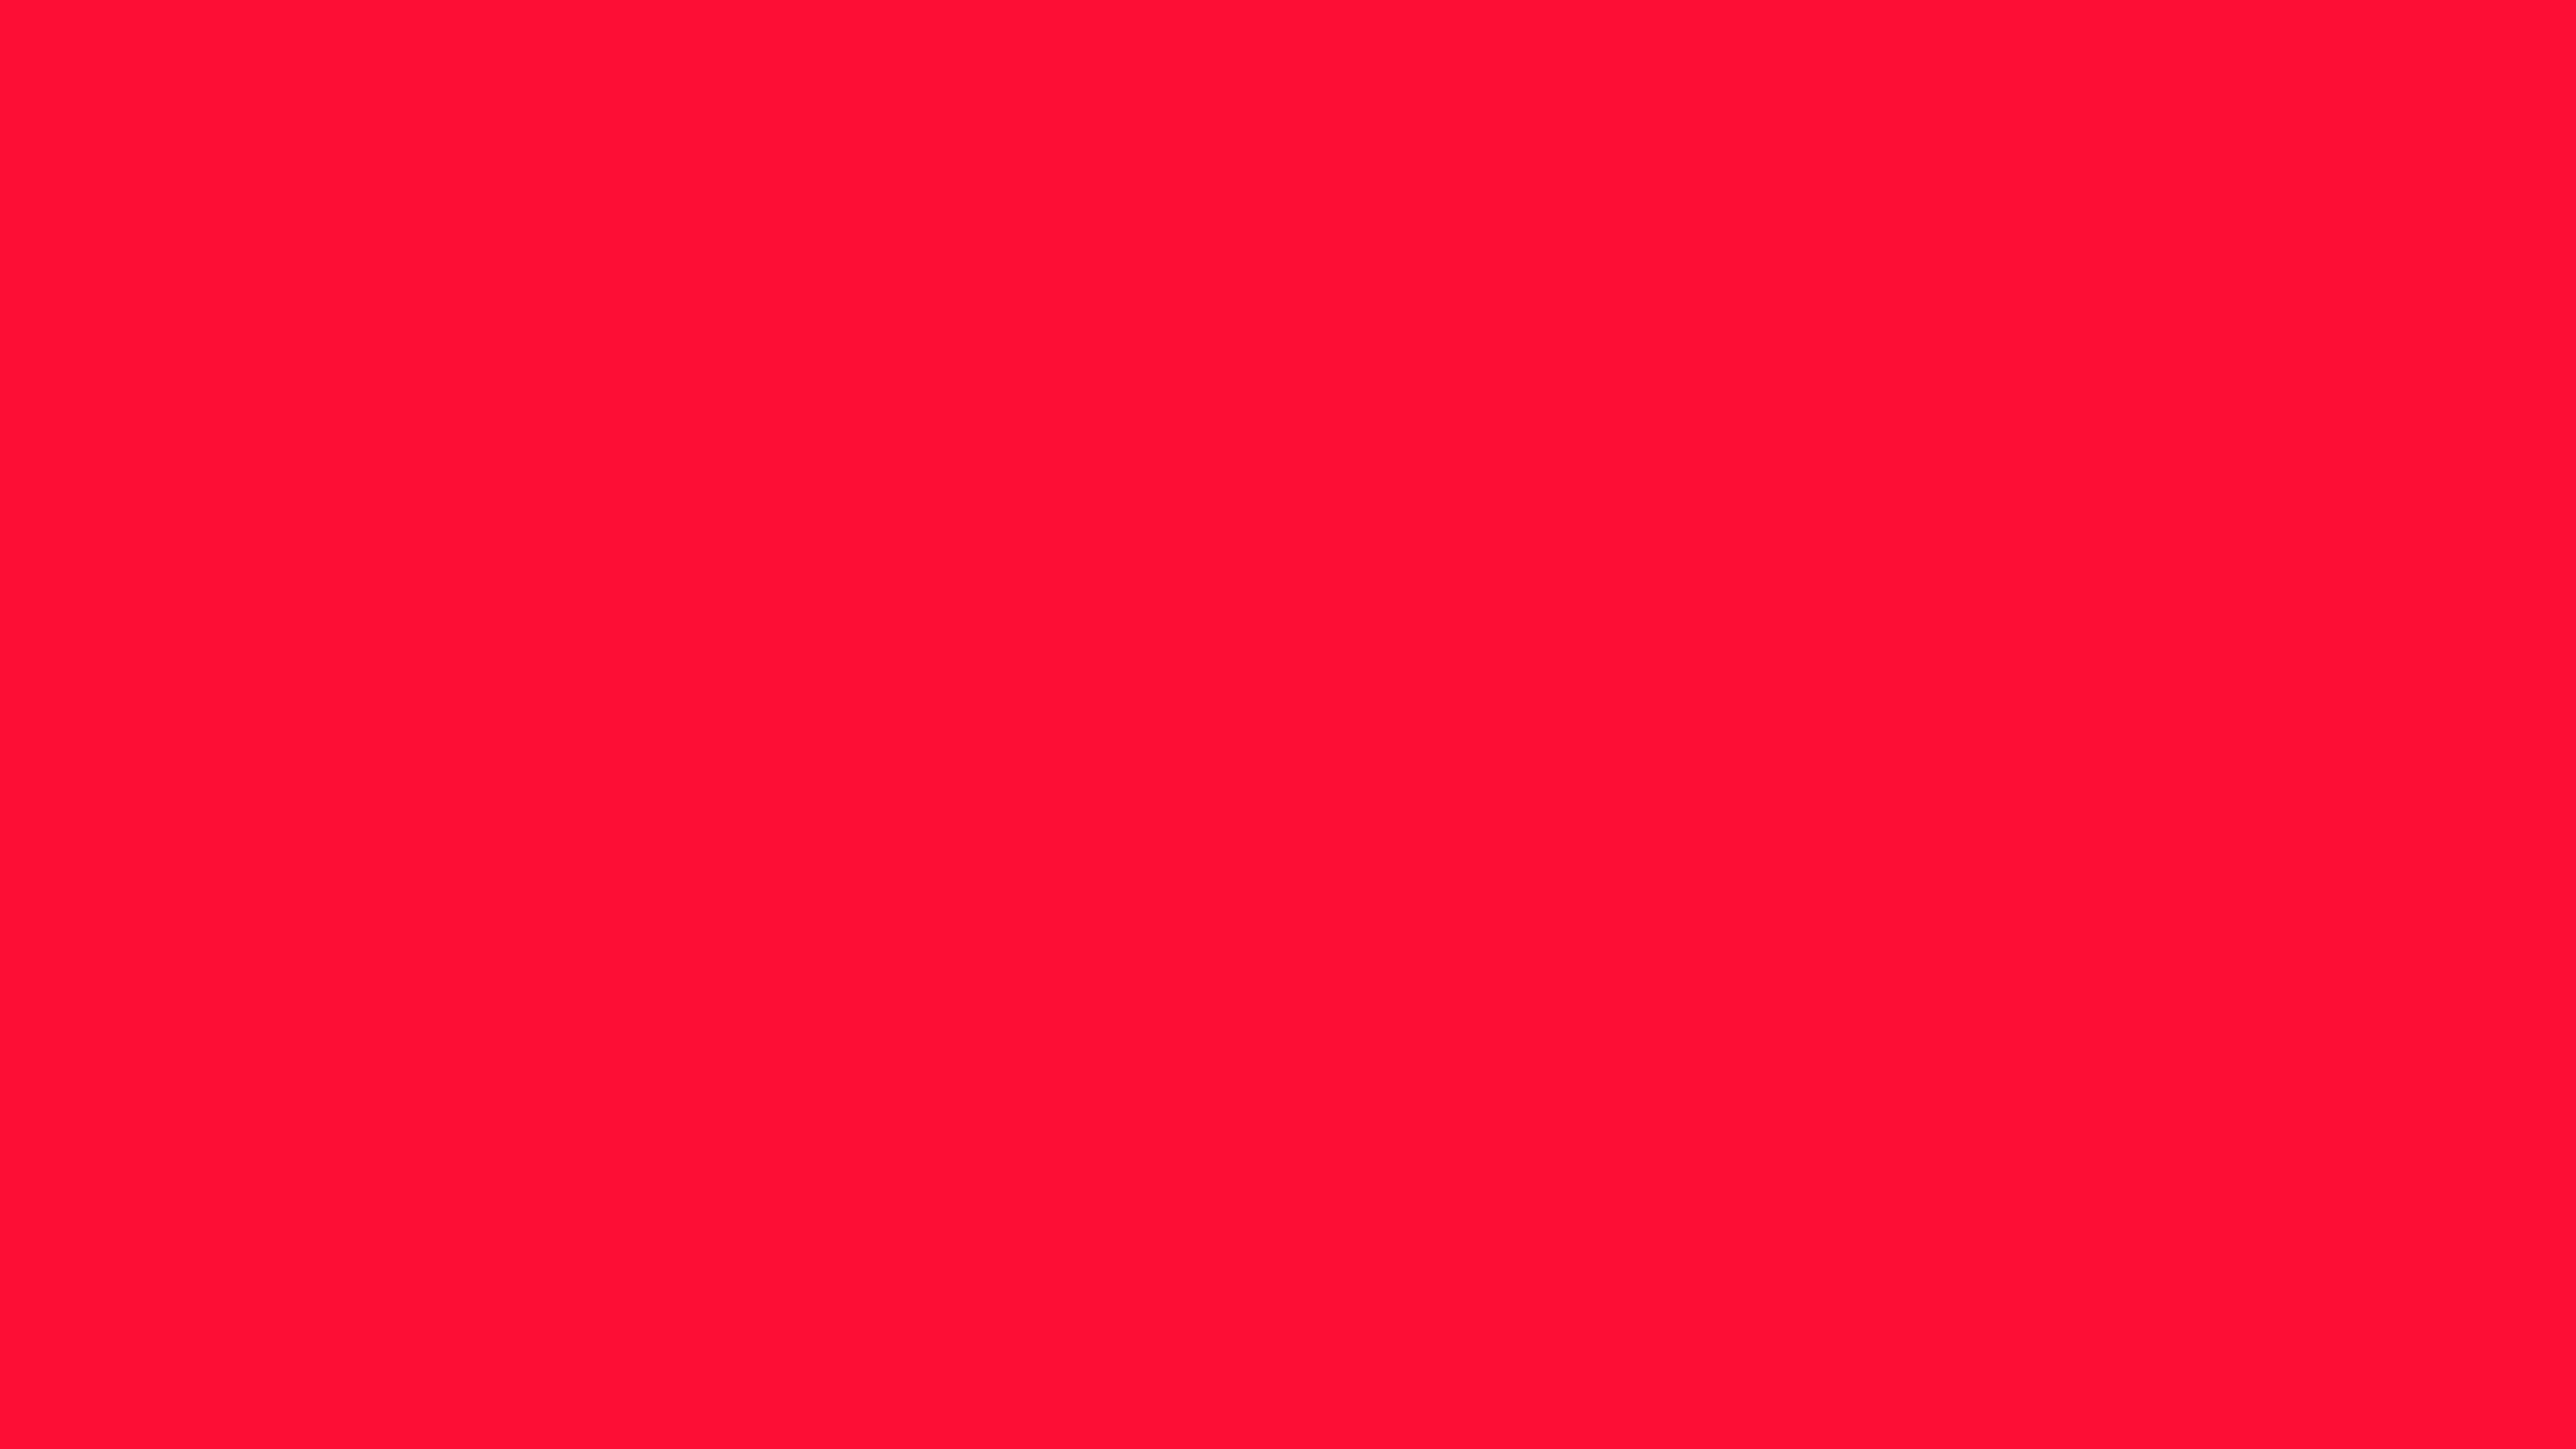 7680x4320 Scarlet Crayola Solid Color Background